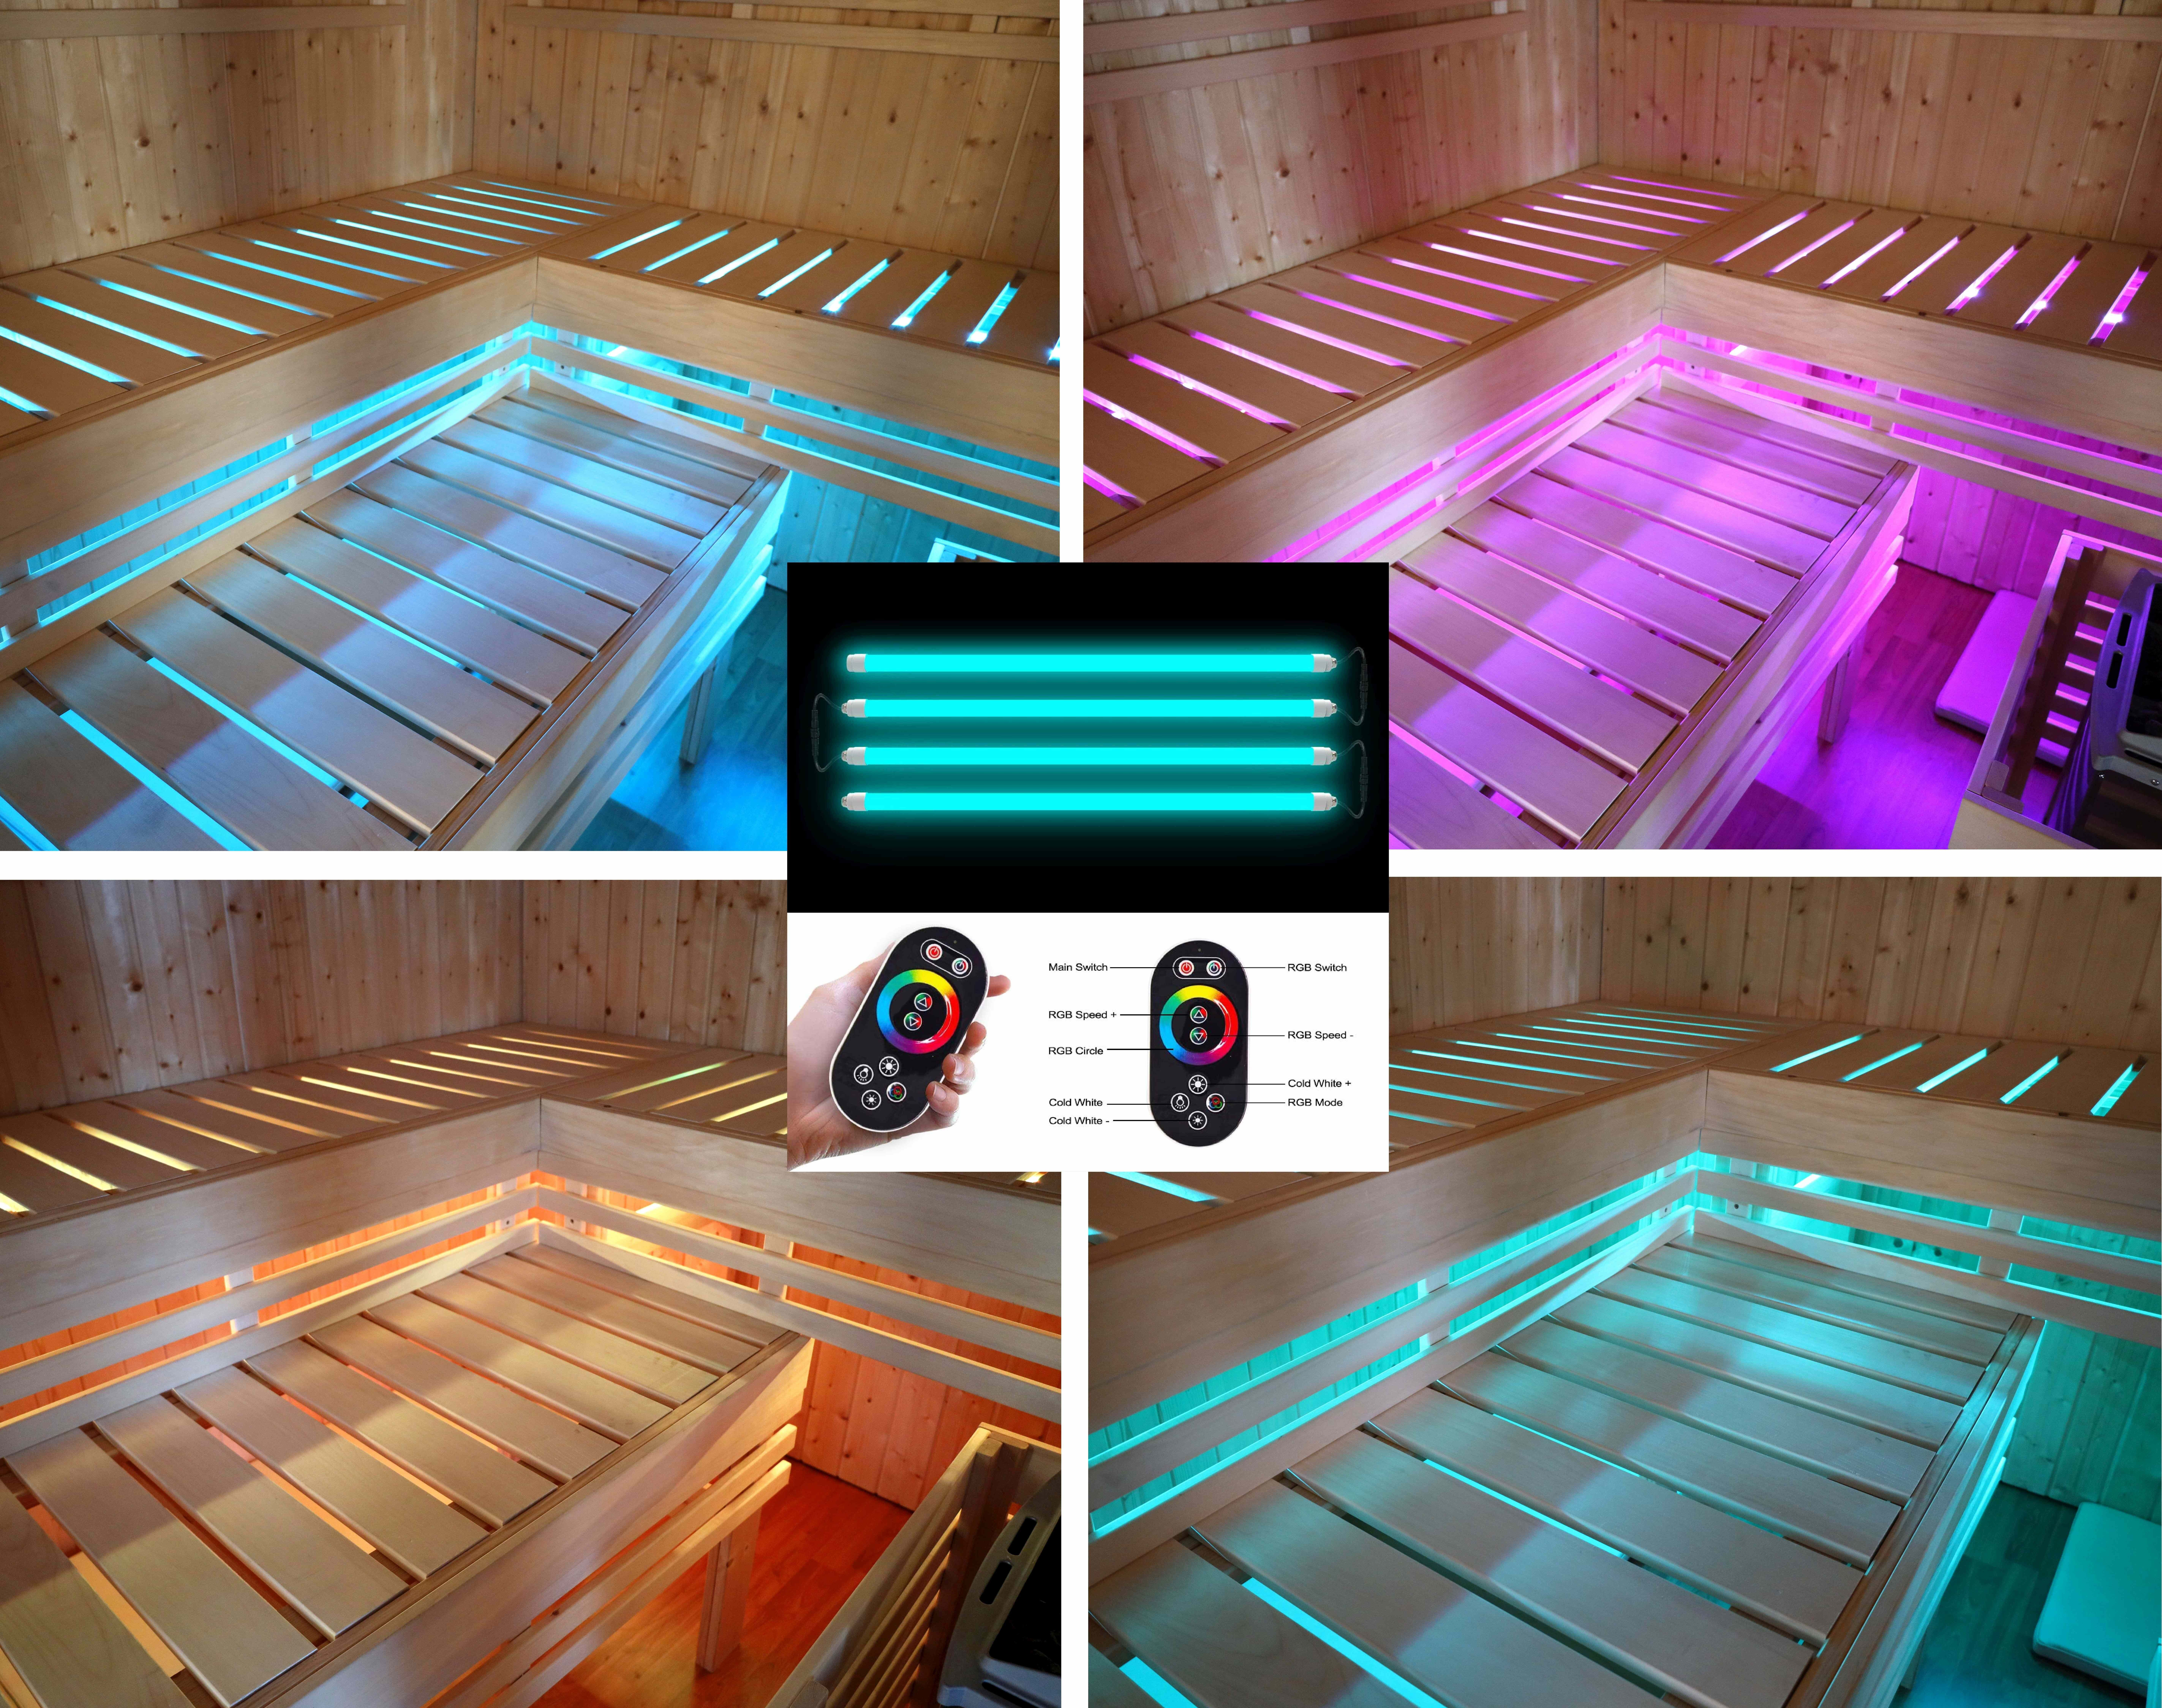 Saunalicht LED Saunaleuchte Unterbankleuchte Farblicht Leuchtenset